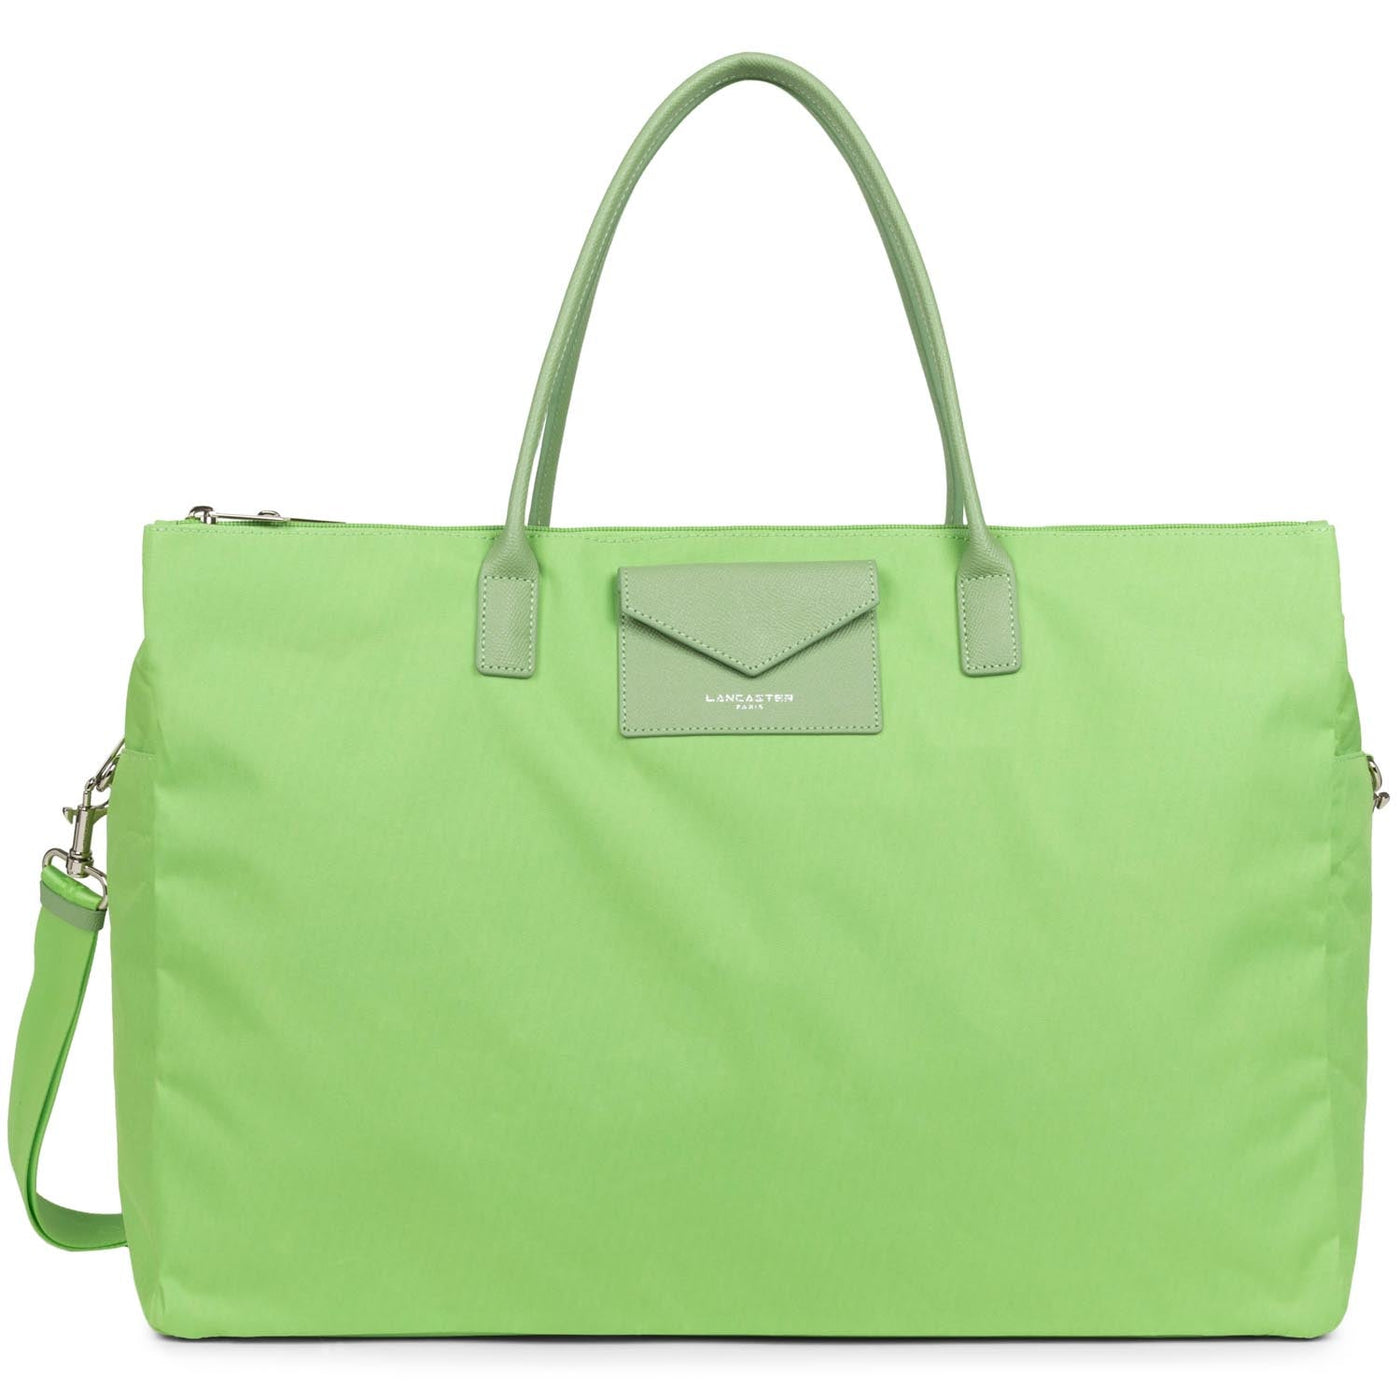 weekender bag - smart kba #couleur_jade